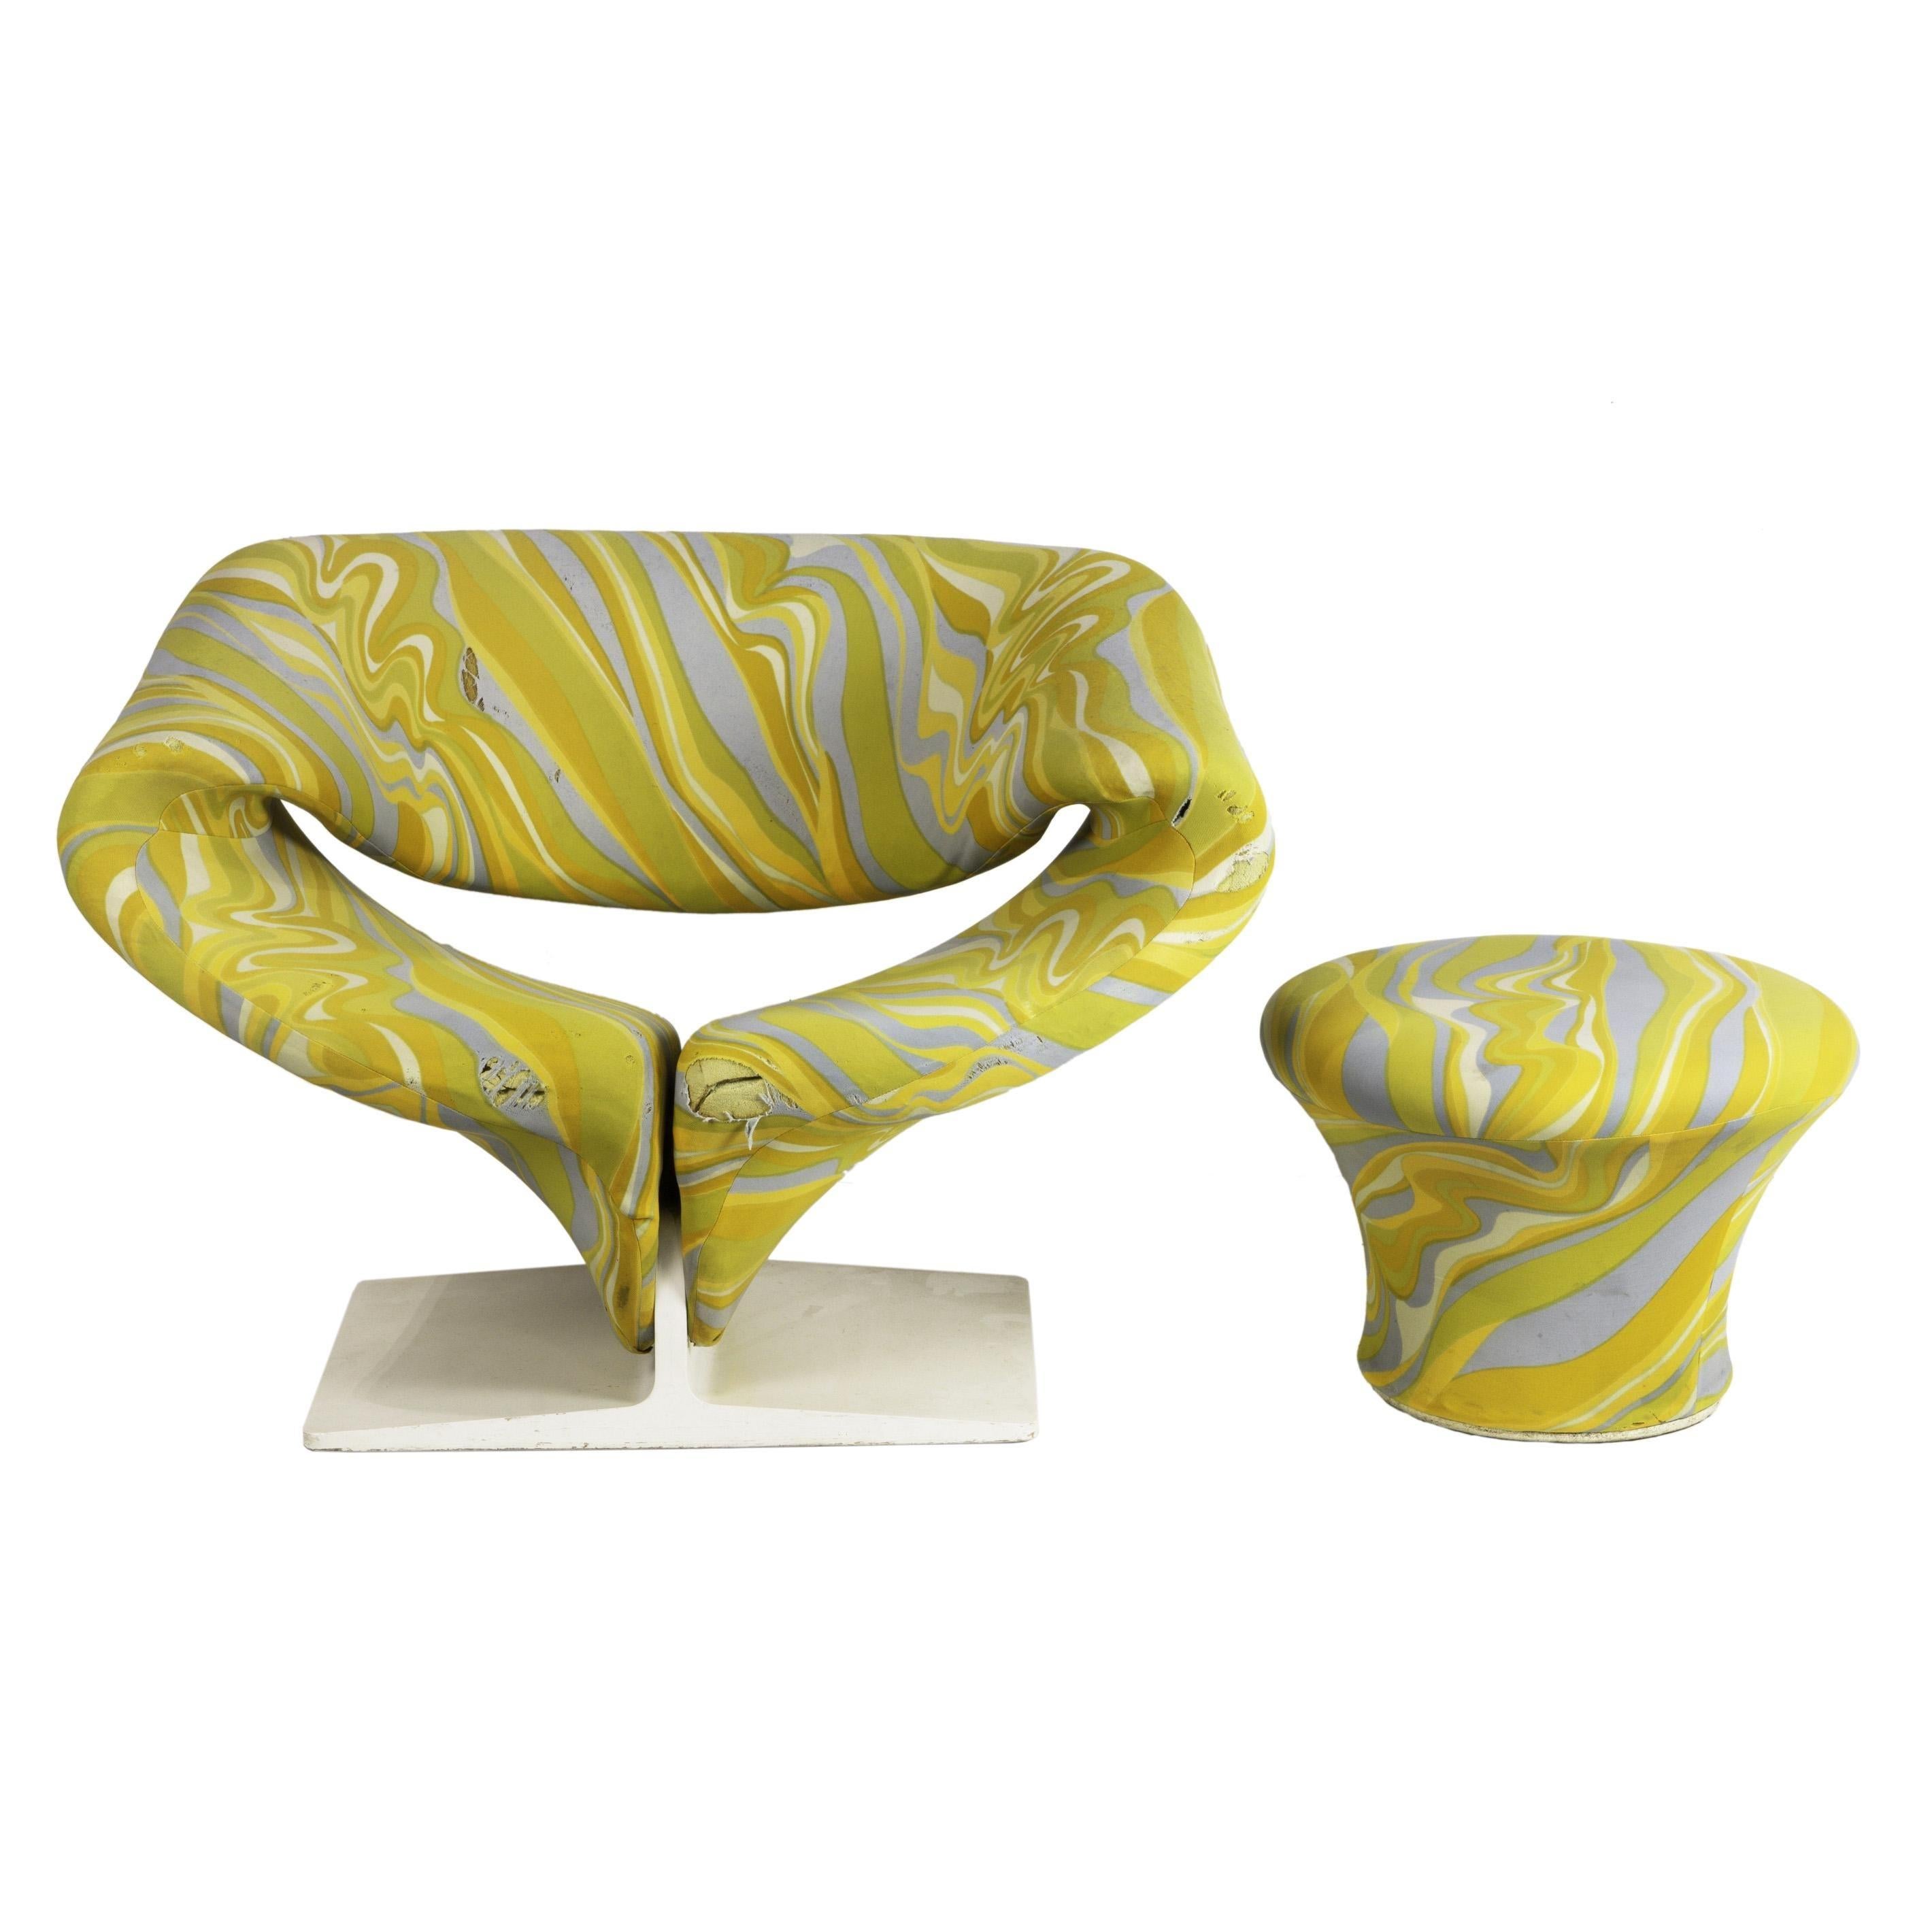 Chaise sculpturale et ottoman conçus par Pierre Paulin et fabriqués par Artifort en 1965 mais distribués par Turner LTD.


La chaise Ribbon est l'une des chaises les plus confortables qui soient. La forme audacieuse et profilée permet à